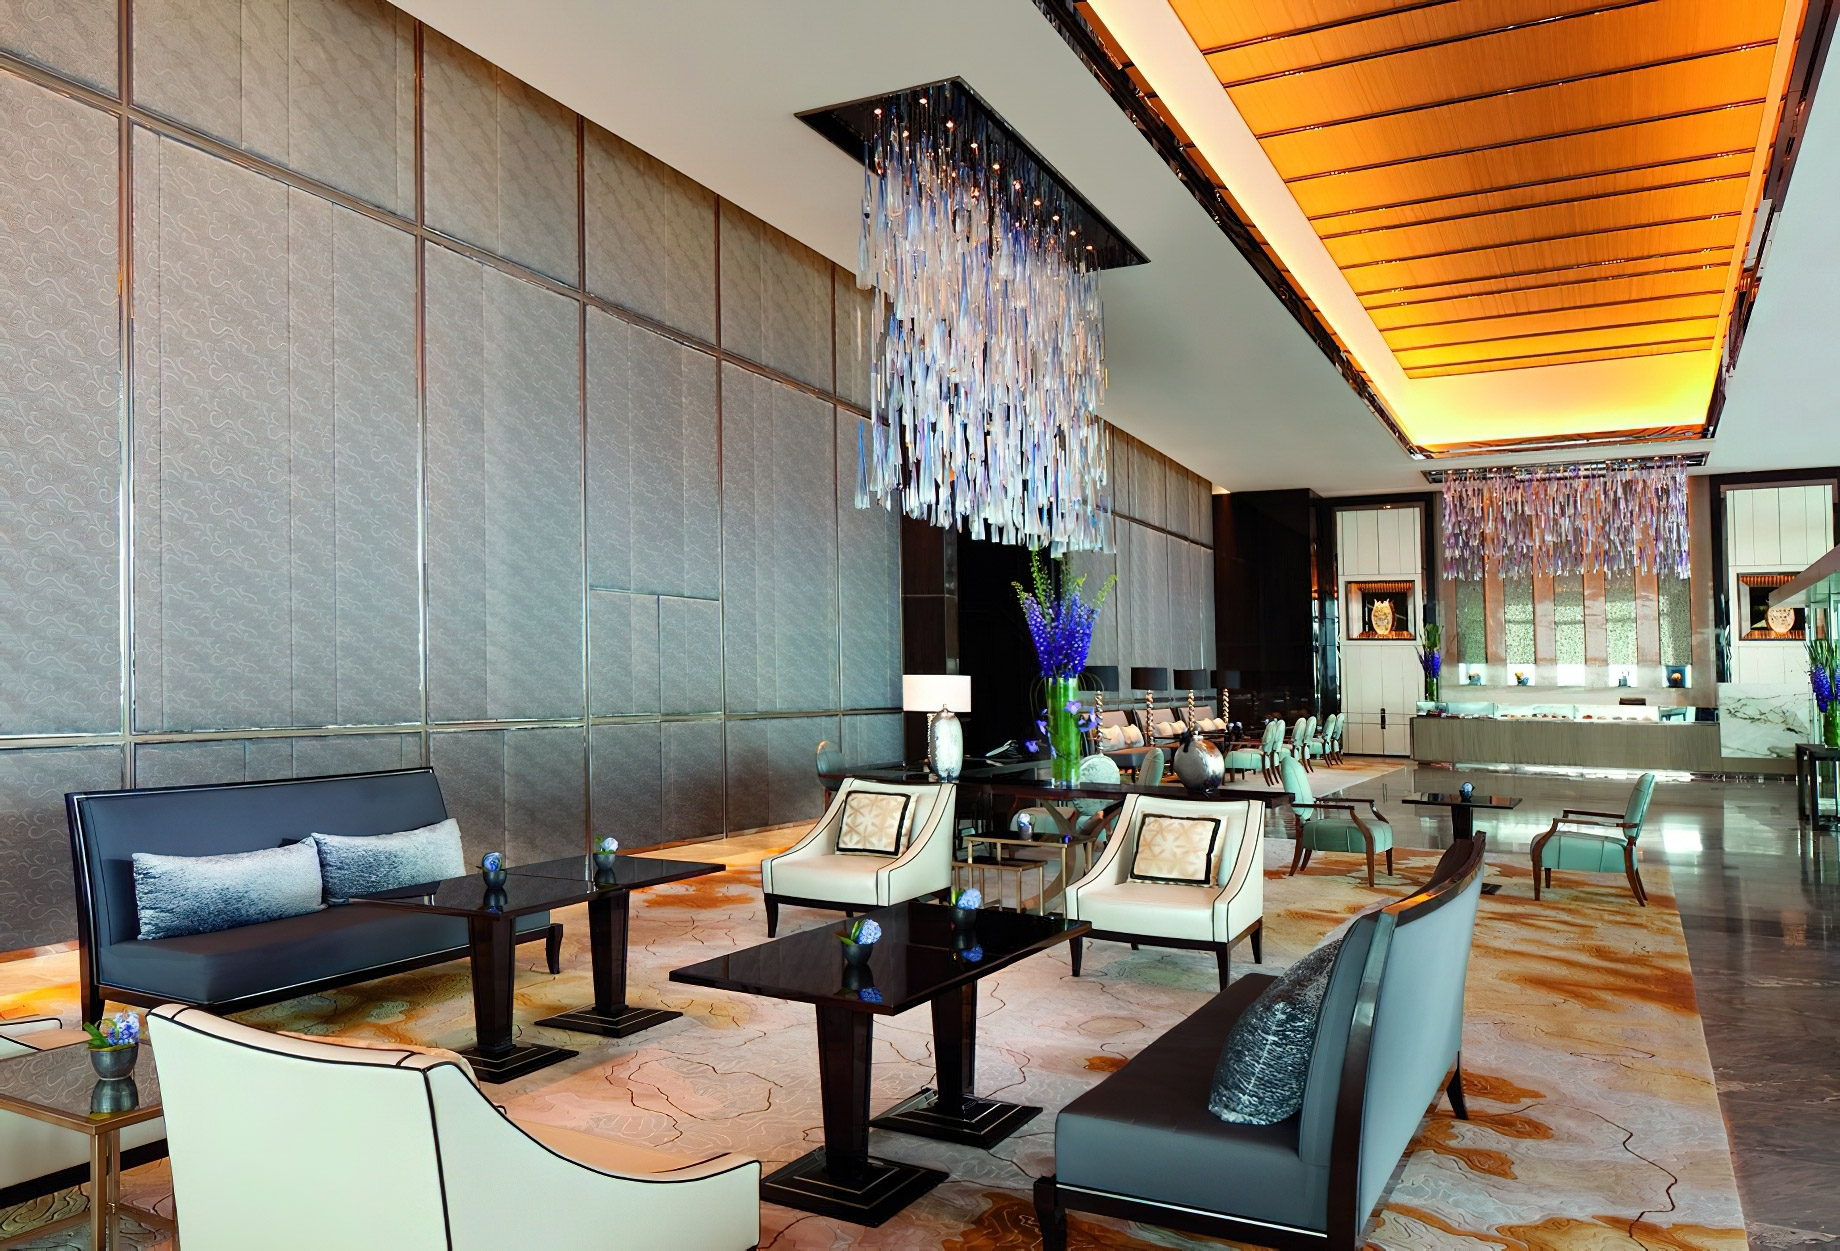 The Ritz-Carlton, Hong Kong Hotel – West Kowloon, Hong Kong – Arrival Lobby